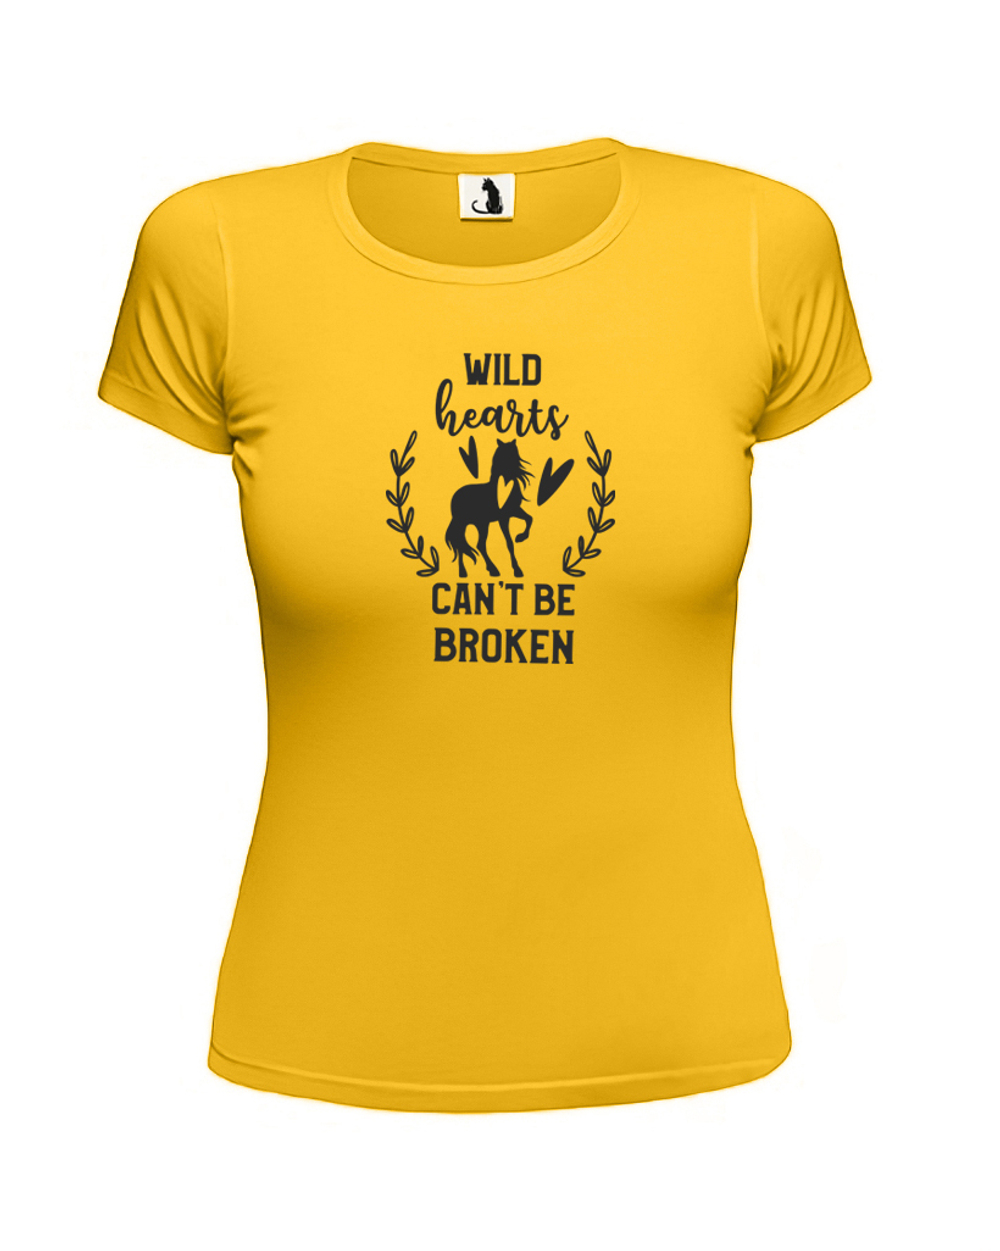 Футболка Wild hearts женская приталенная желтая с черным рисунком